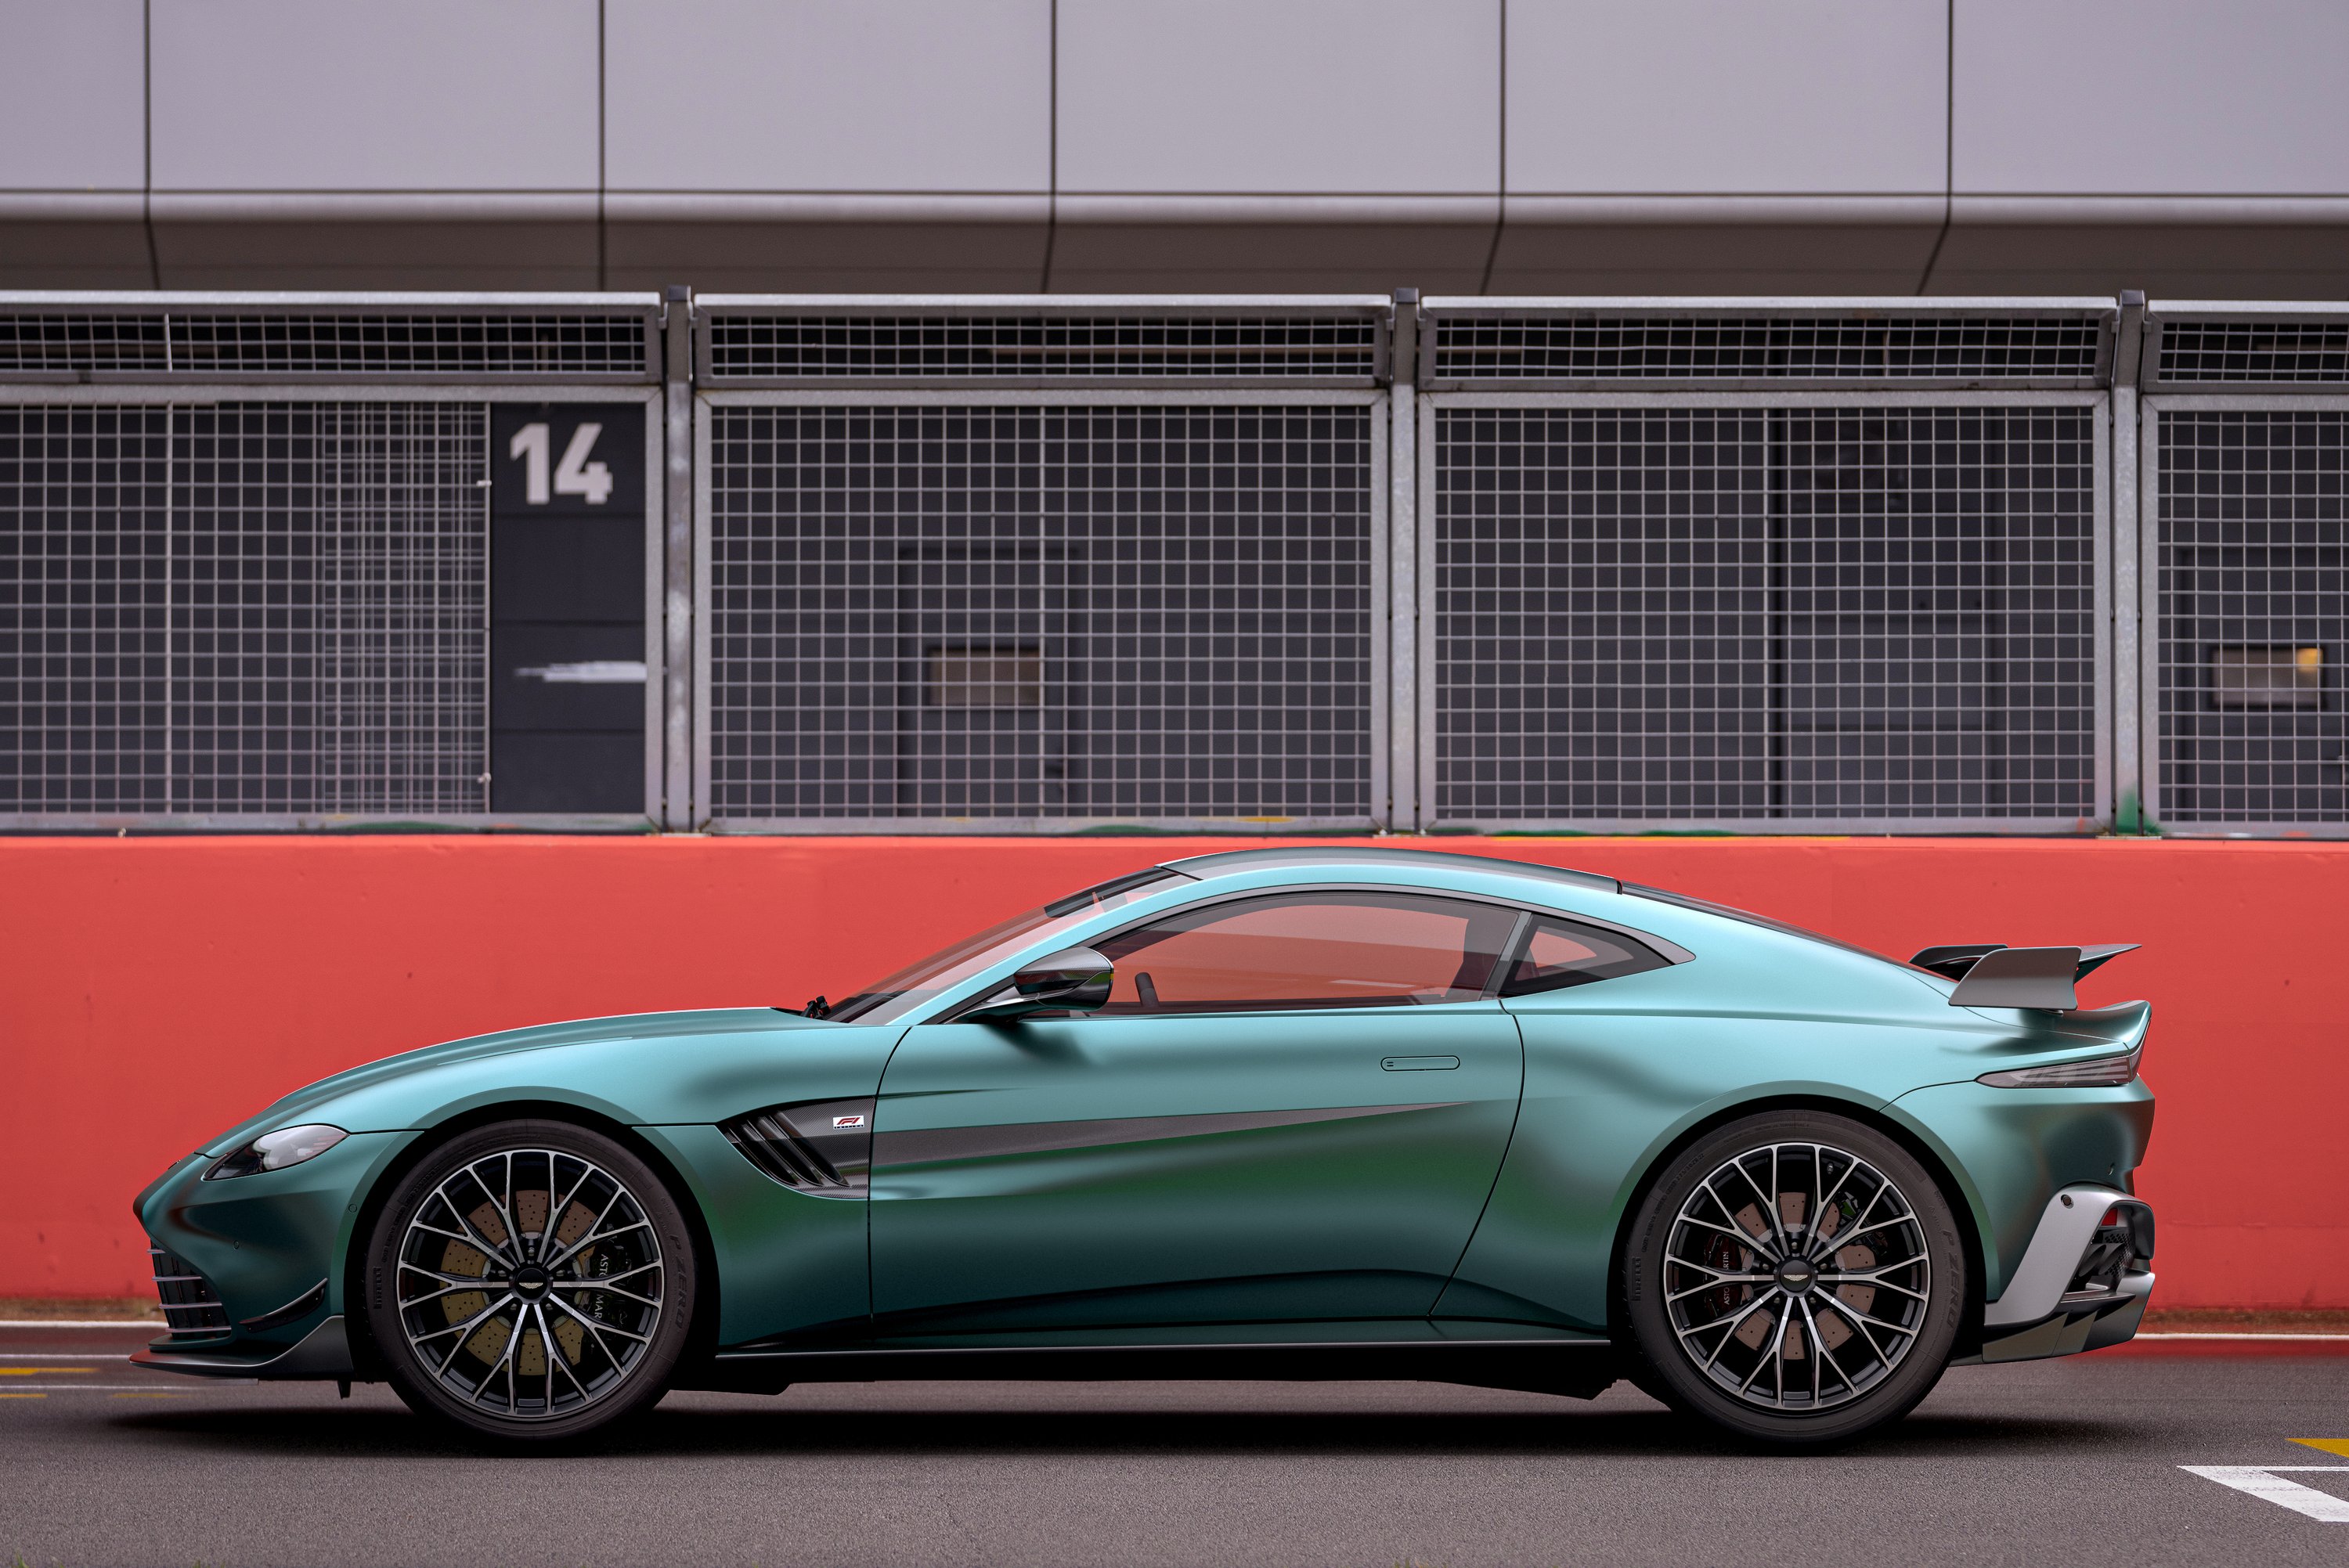 A Forma-1-ből jön az utcára ez az Aston Martin 7